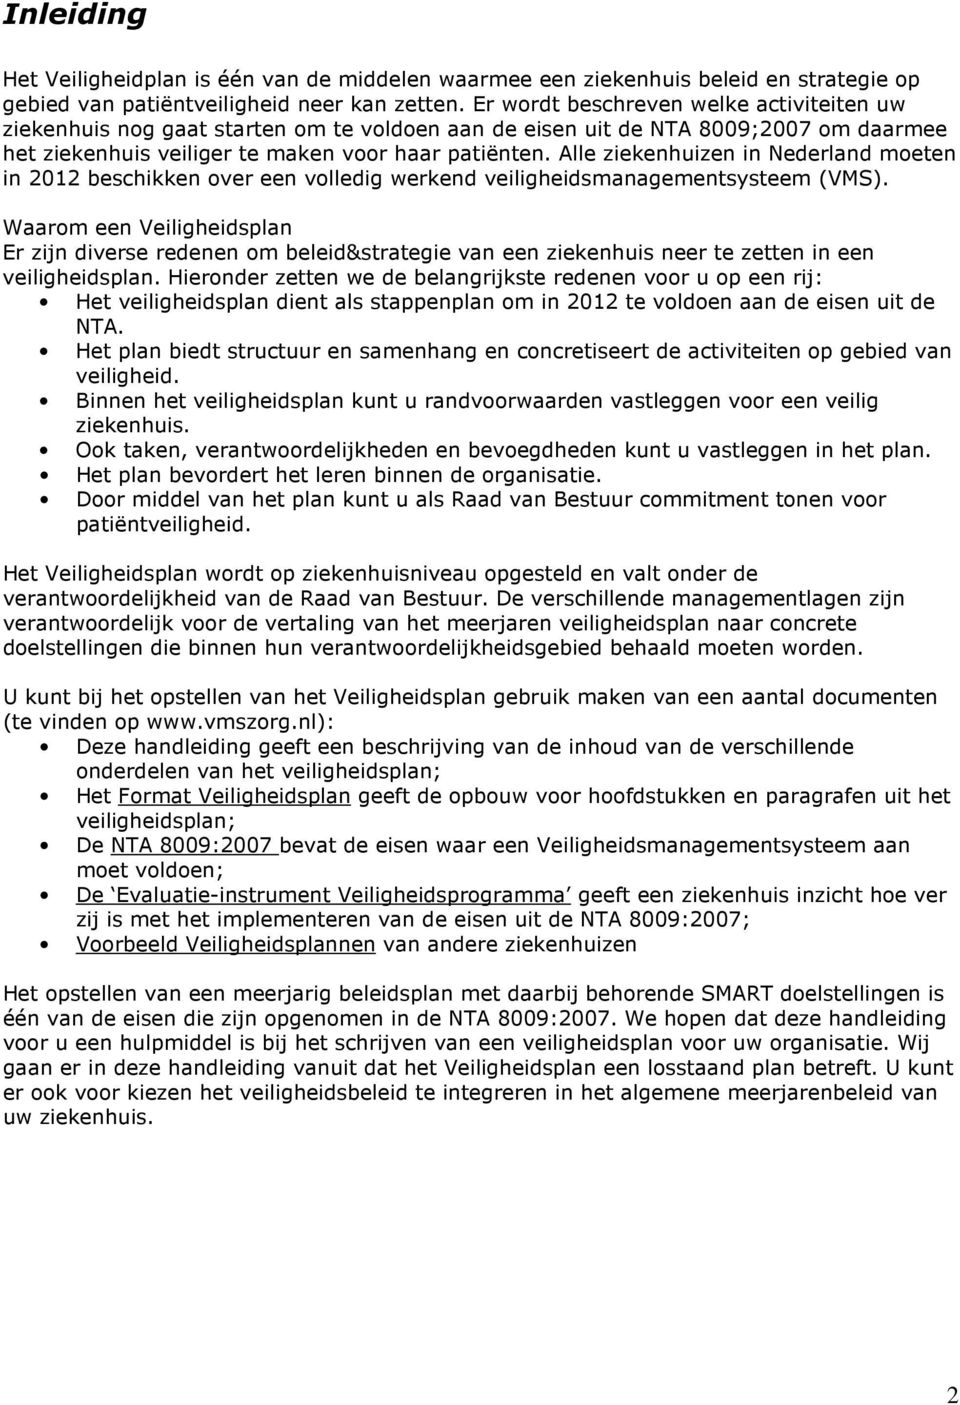 Alle ziekenhuizen in Nederland moeten in 2012 beschikken over een volledig werkend veiligheidsmanagementsysteem (VMS).